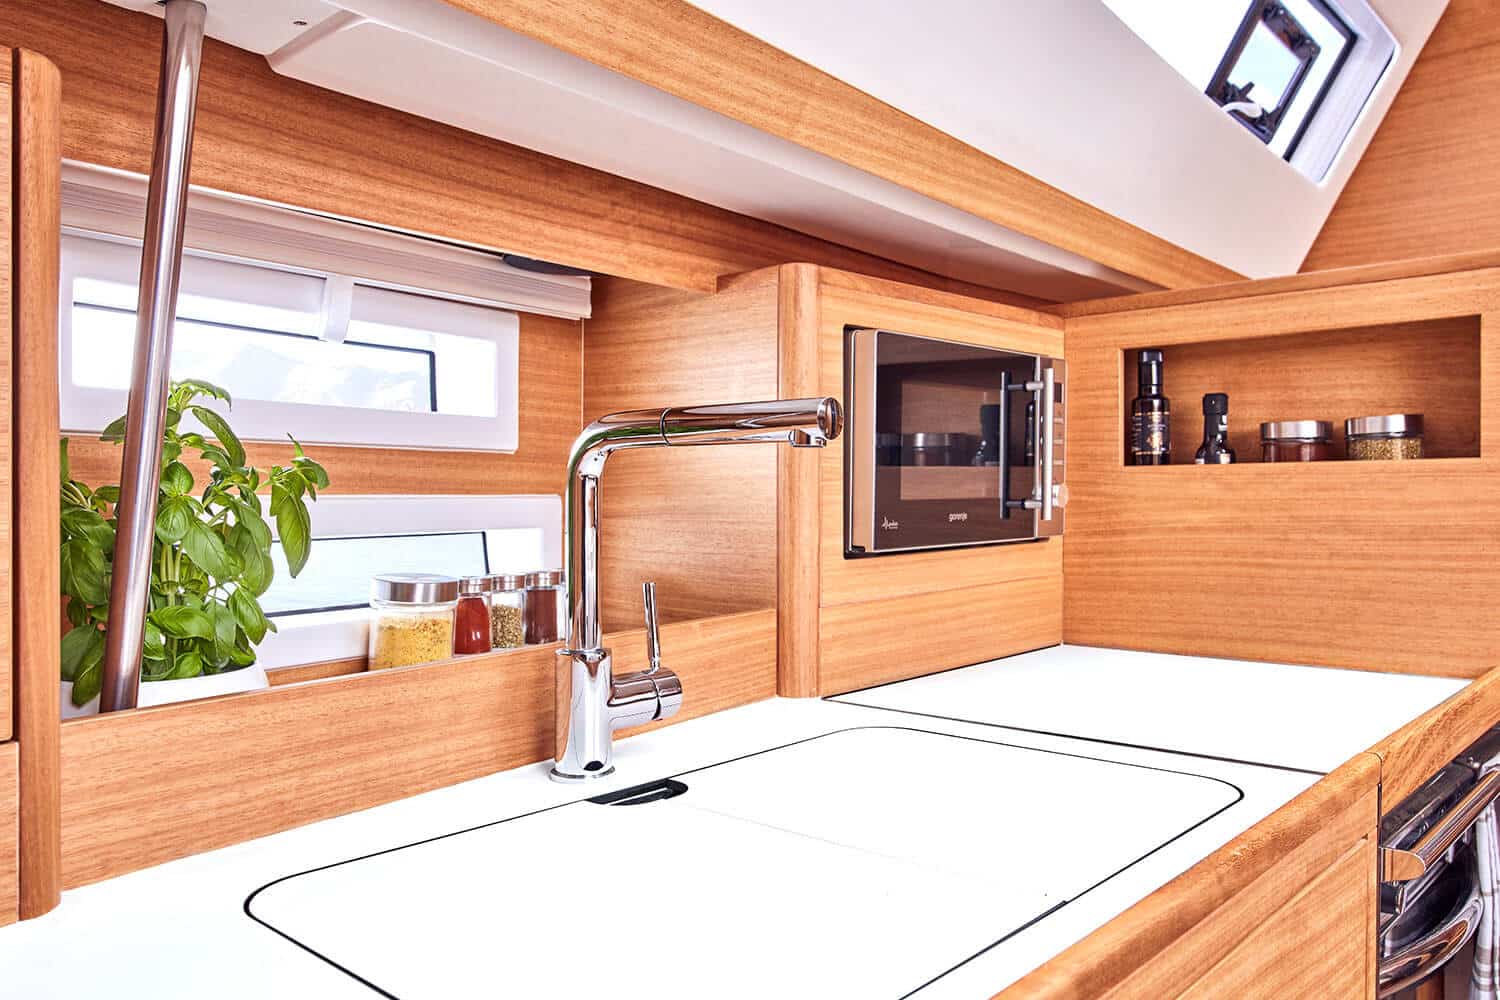 Modernes Yachtküchen-Interieur mit Holzvertäfelung, weißer Arbeitsplatte, Edelstahlhahn und Einbaugeräten. Während des Segeltörns strömt natürliches Licht durch Fenster und ein Oberlicht herein.